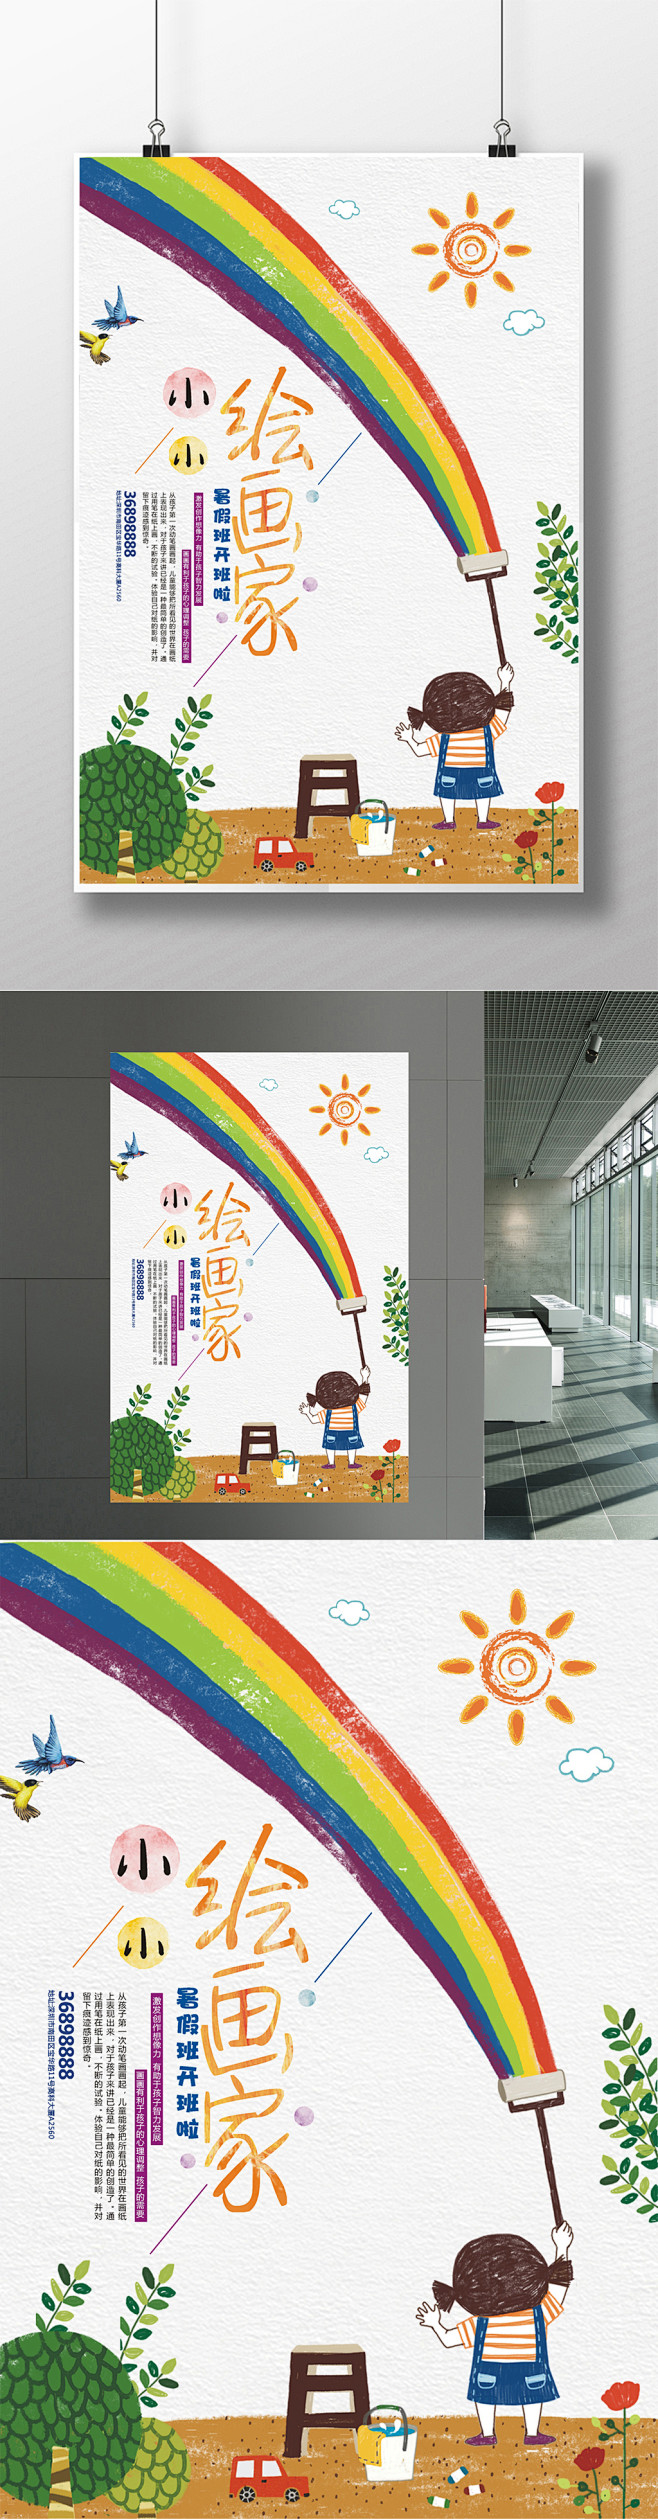 宣传-花瓣网|陪你做生活的设计师 创意小小绘画家少儿画室招生海报